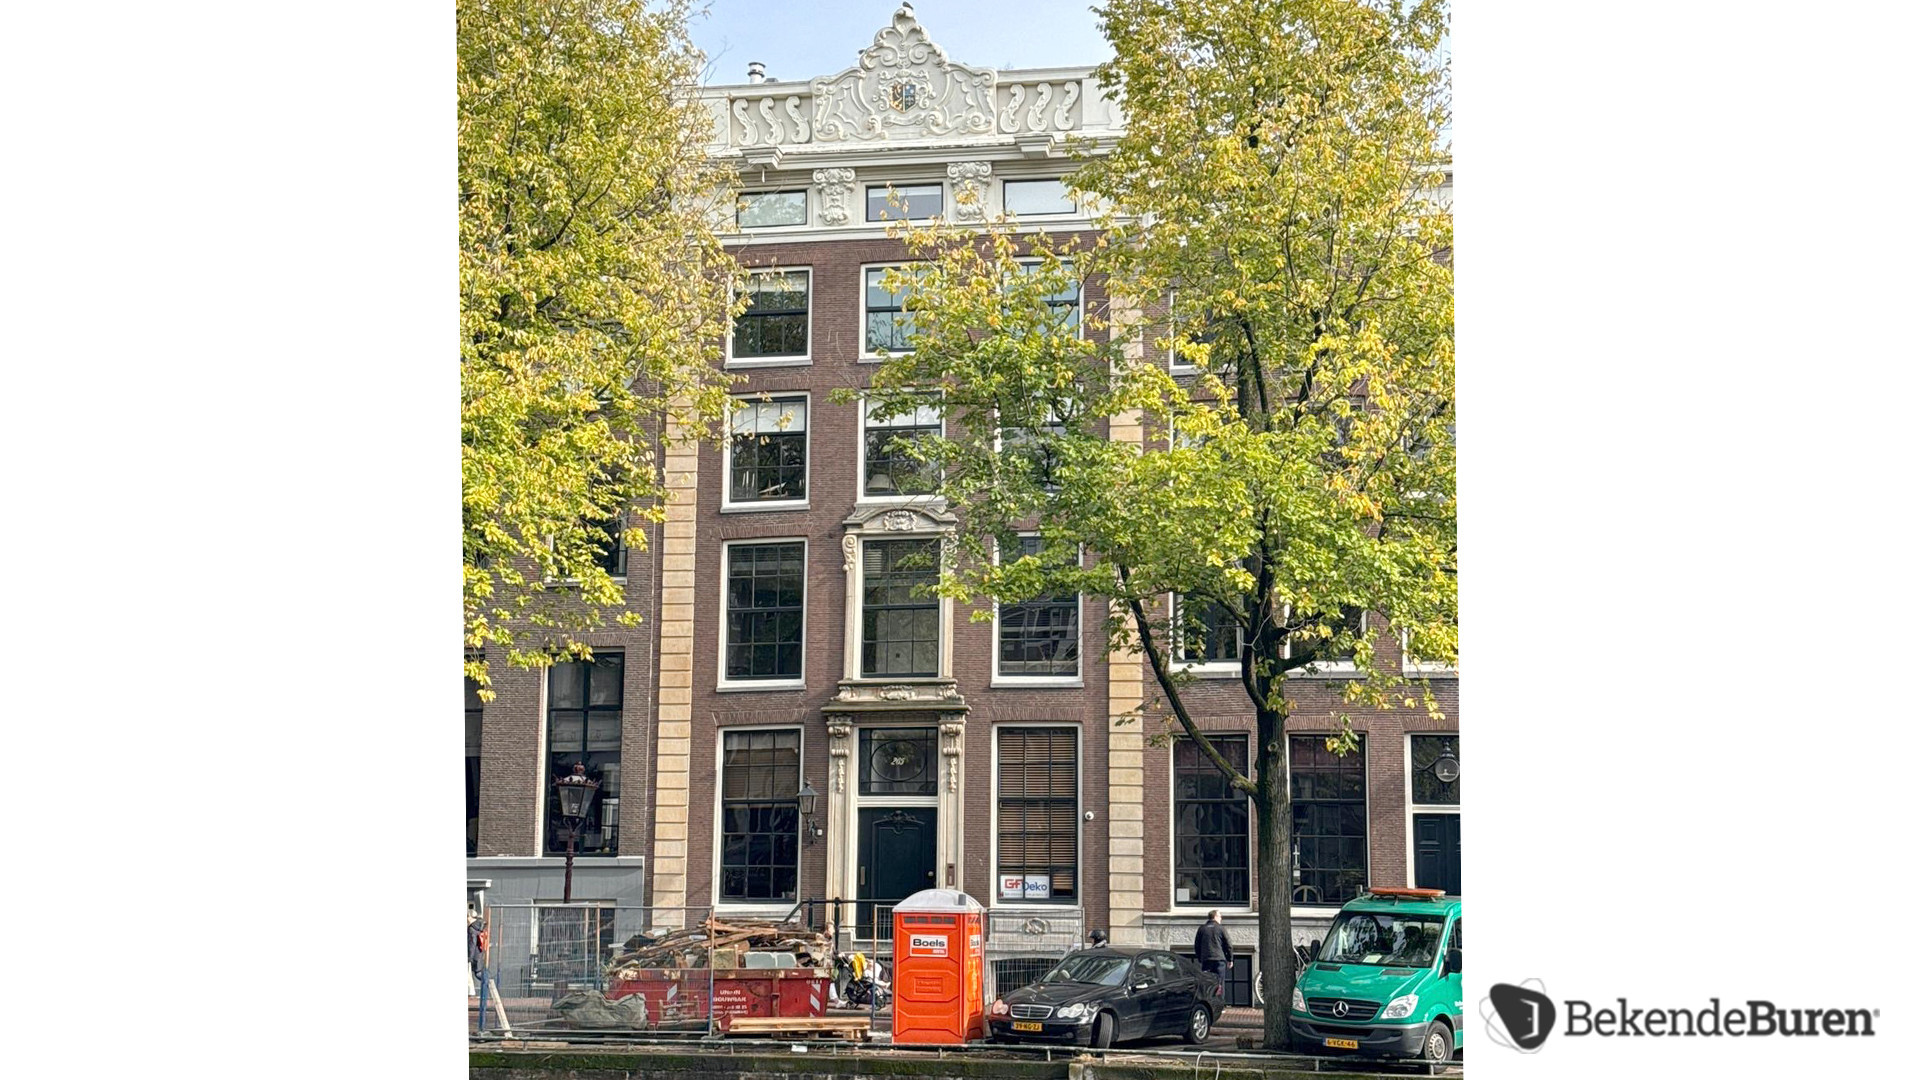 Lieke van Lexmond en Bas van Veggel kopen miljoenenpand aan de Keizersgracht in Amsterdam. Zie foto's 4